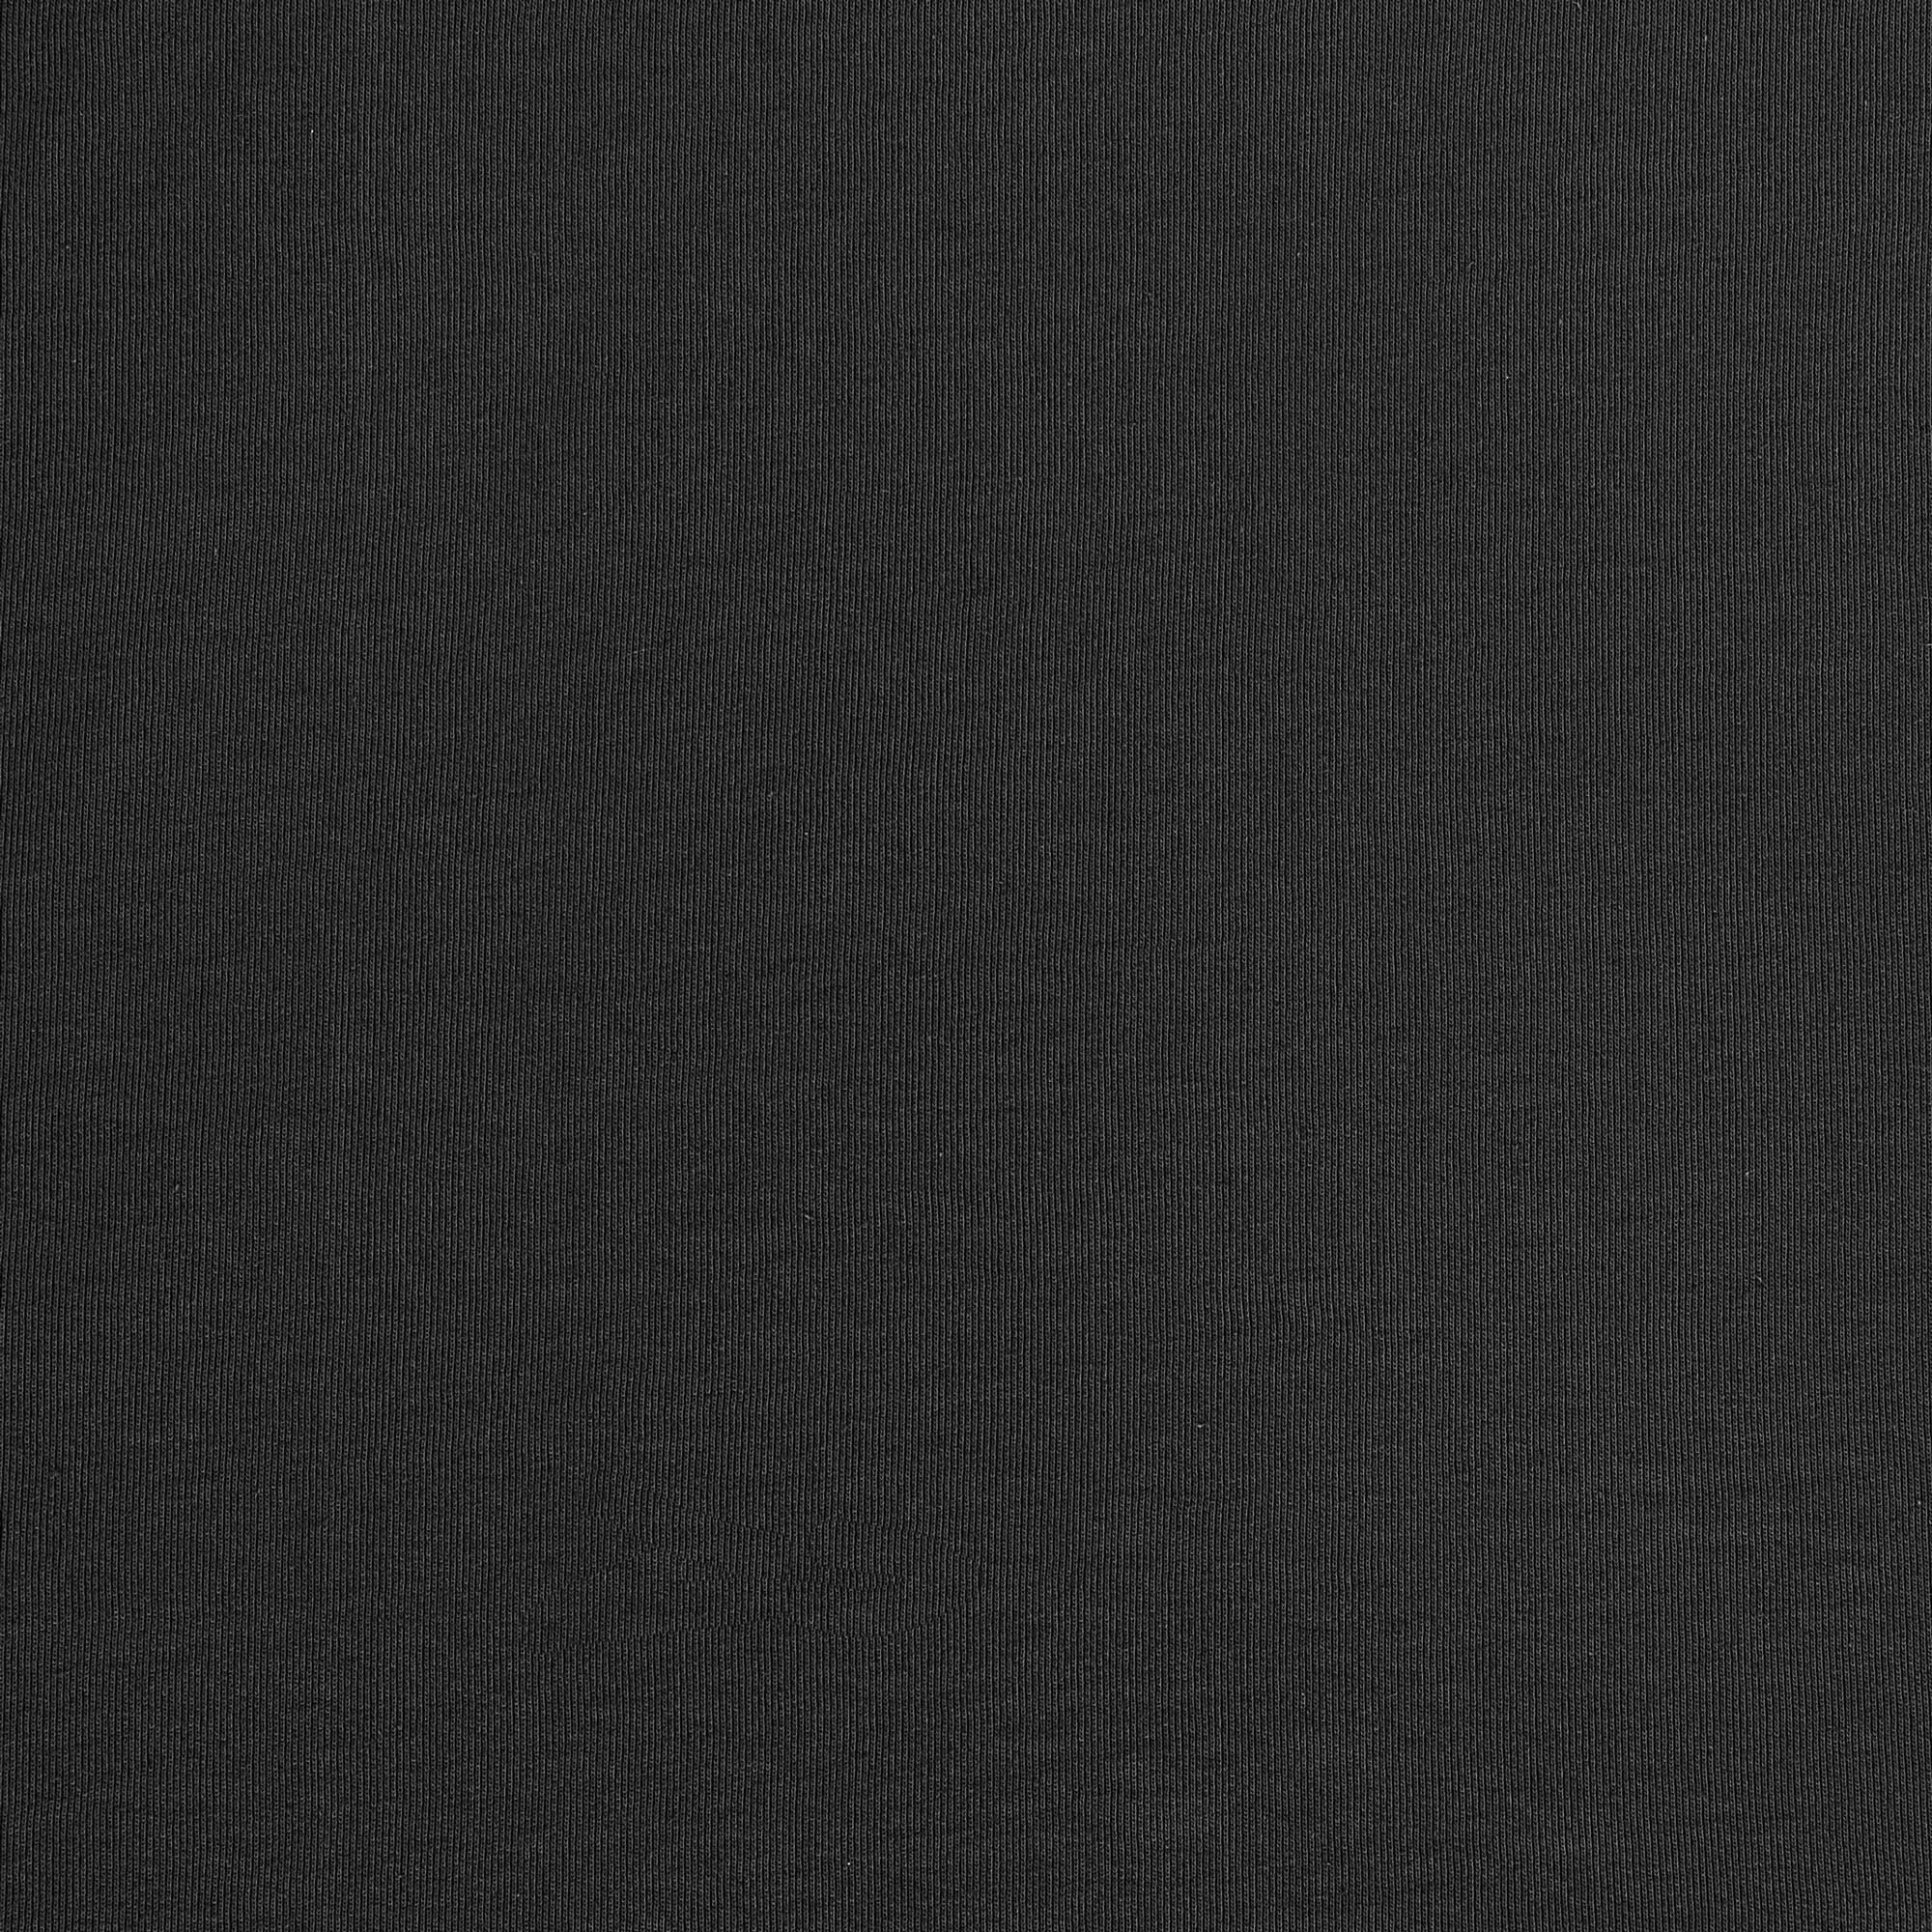 Рубашка мужская Diva Teks поло черная, цвет черный, размер M - фото 6